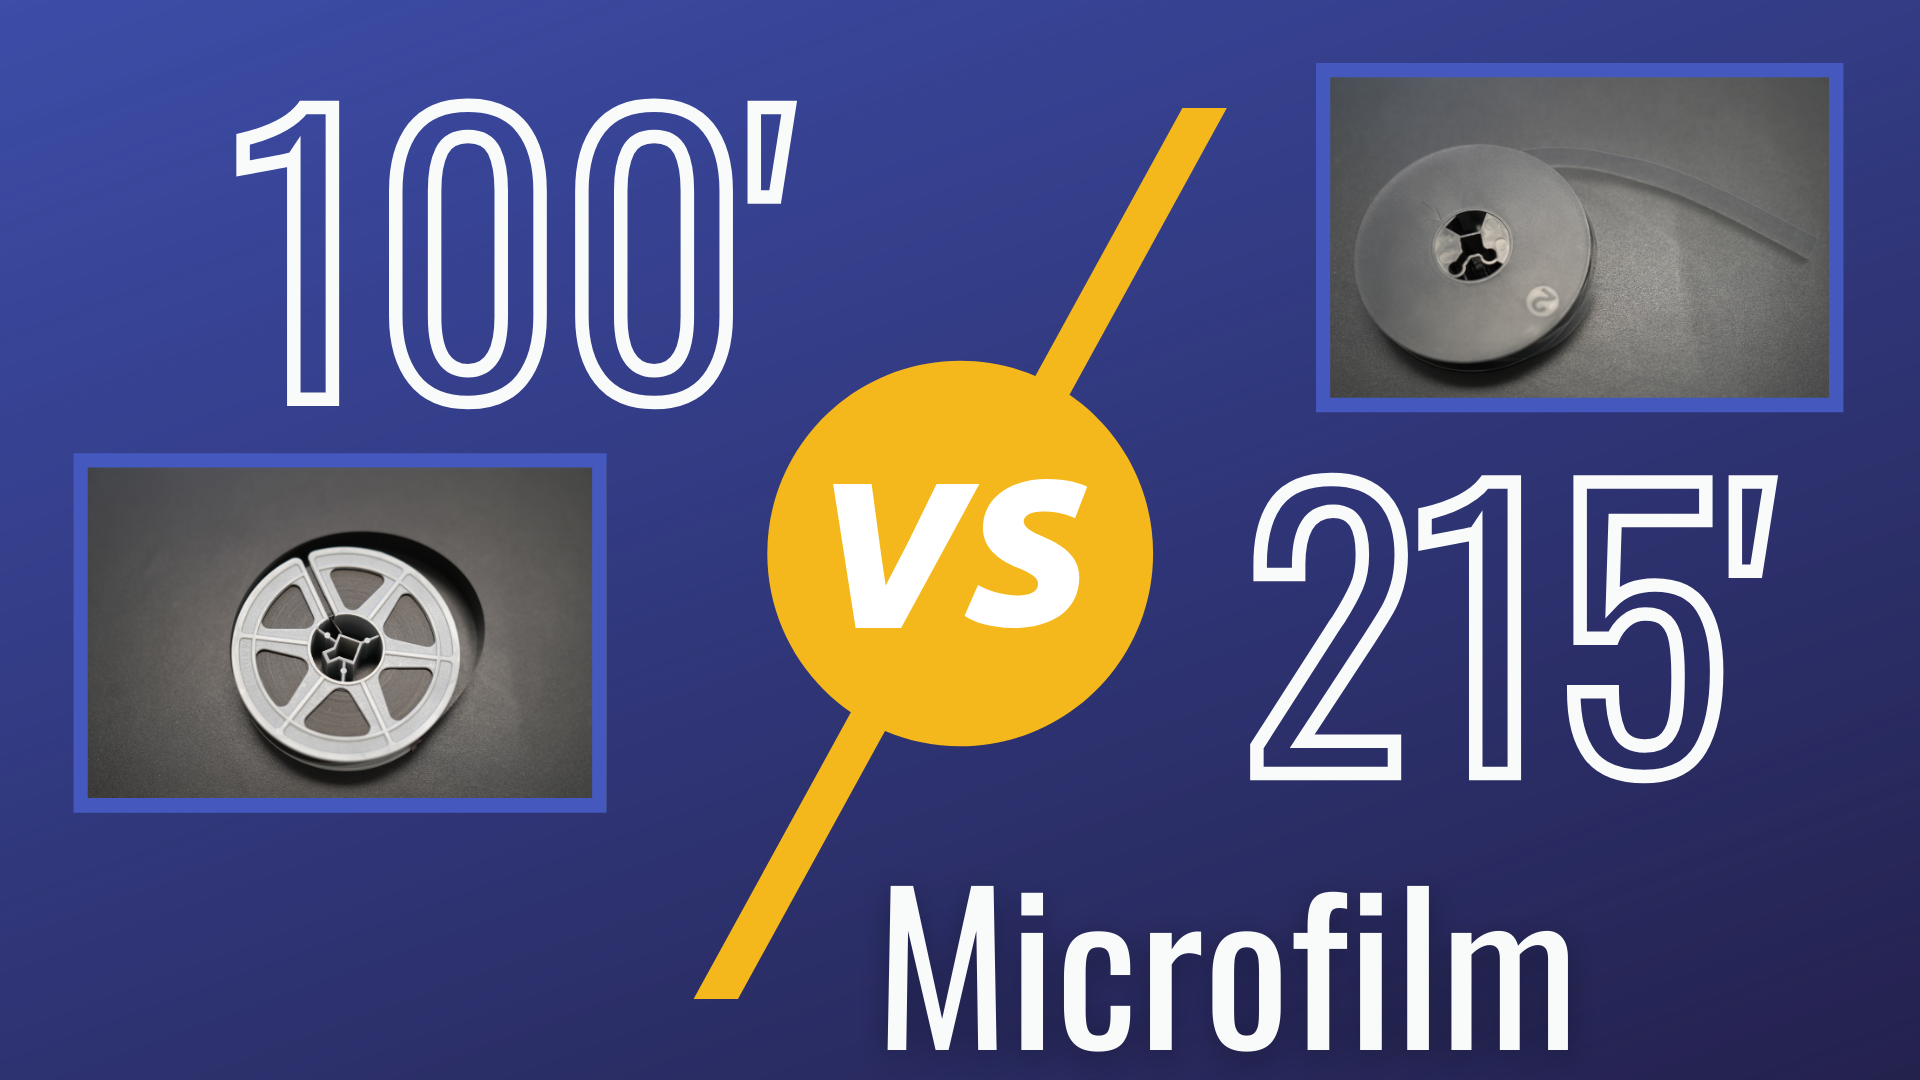 100' vs 215' Microfilm